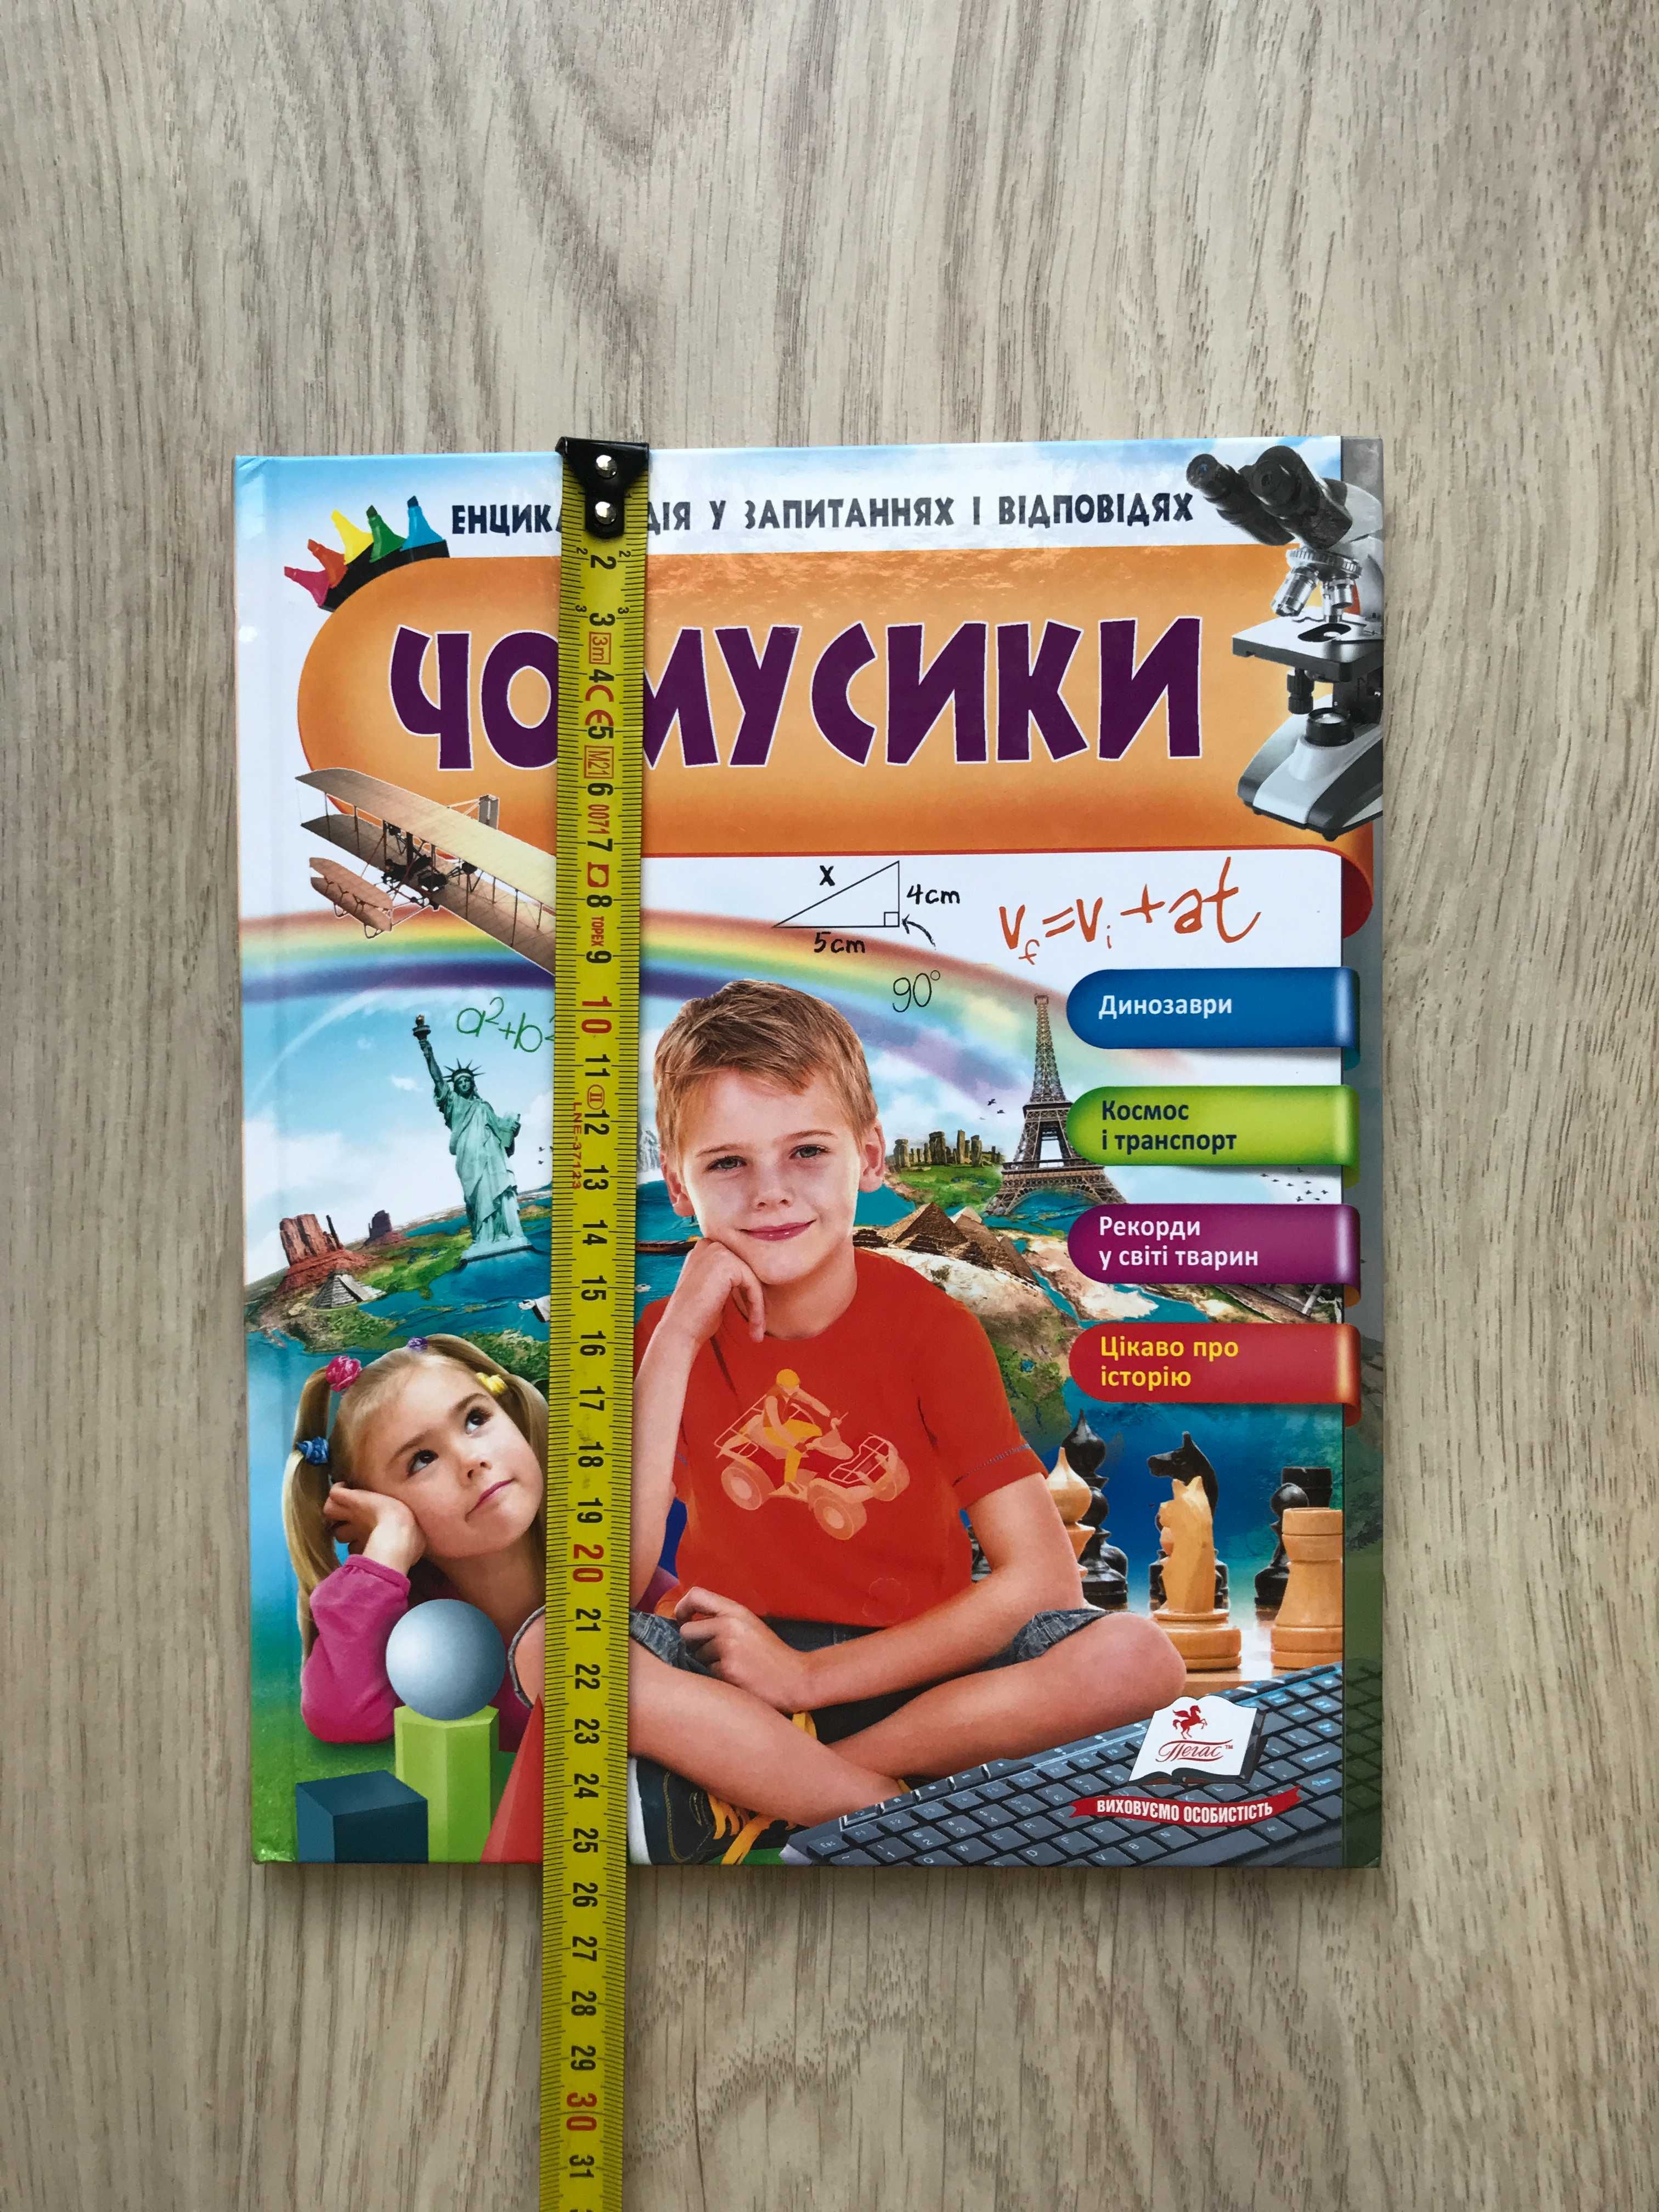 (UKR) Енциклопедія Чомусики po ukrainsku w jezyku ukrainskim